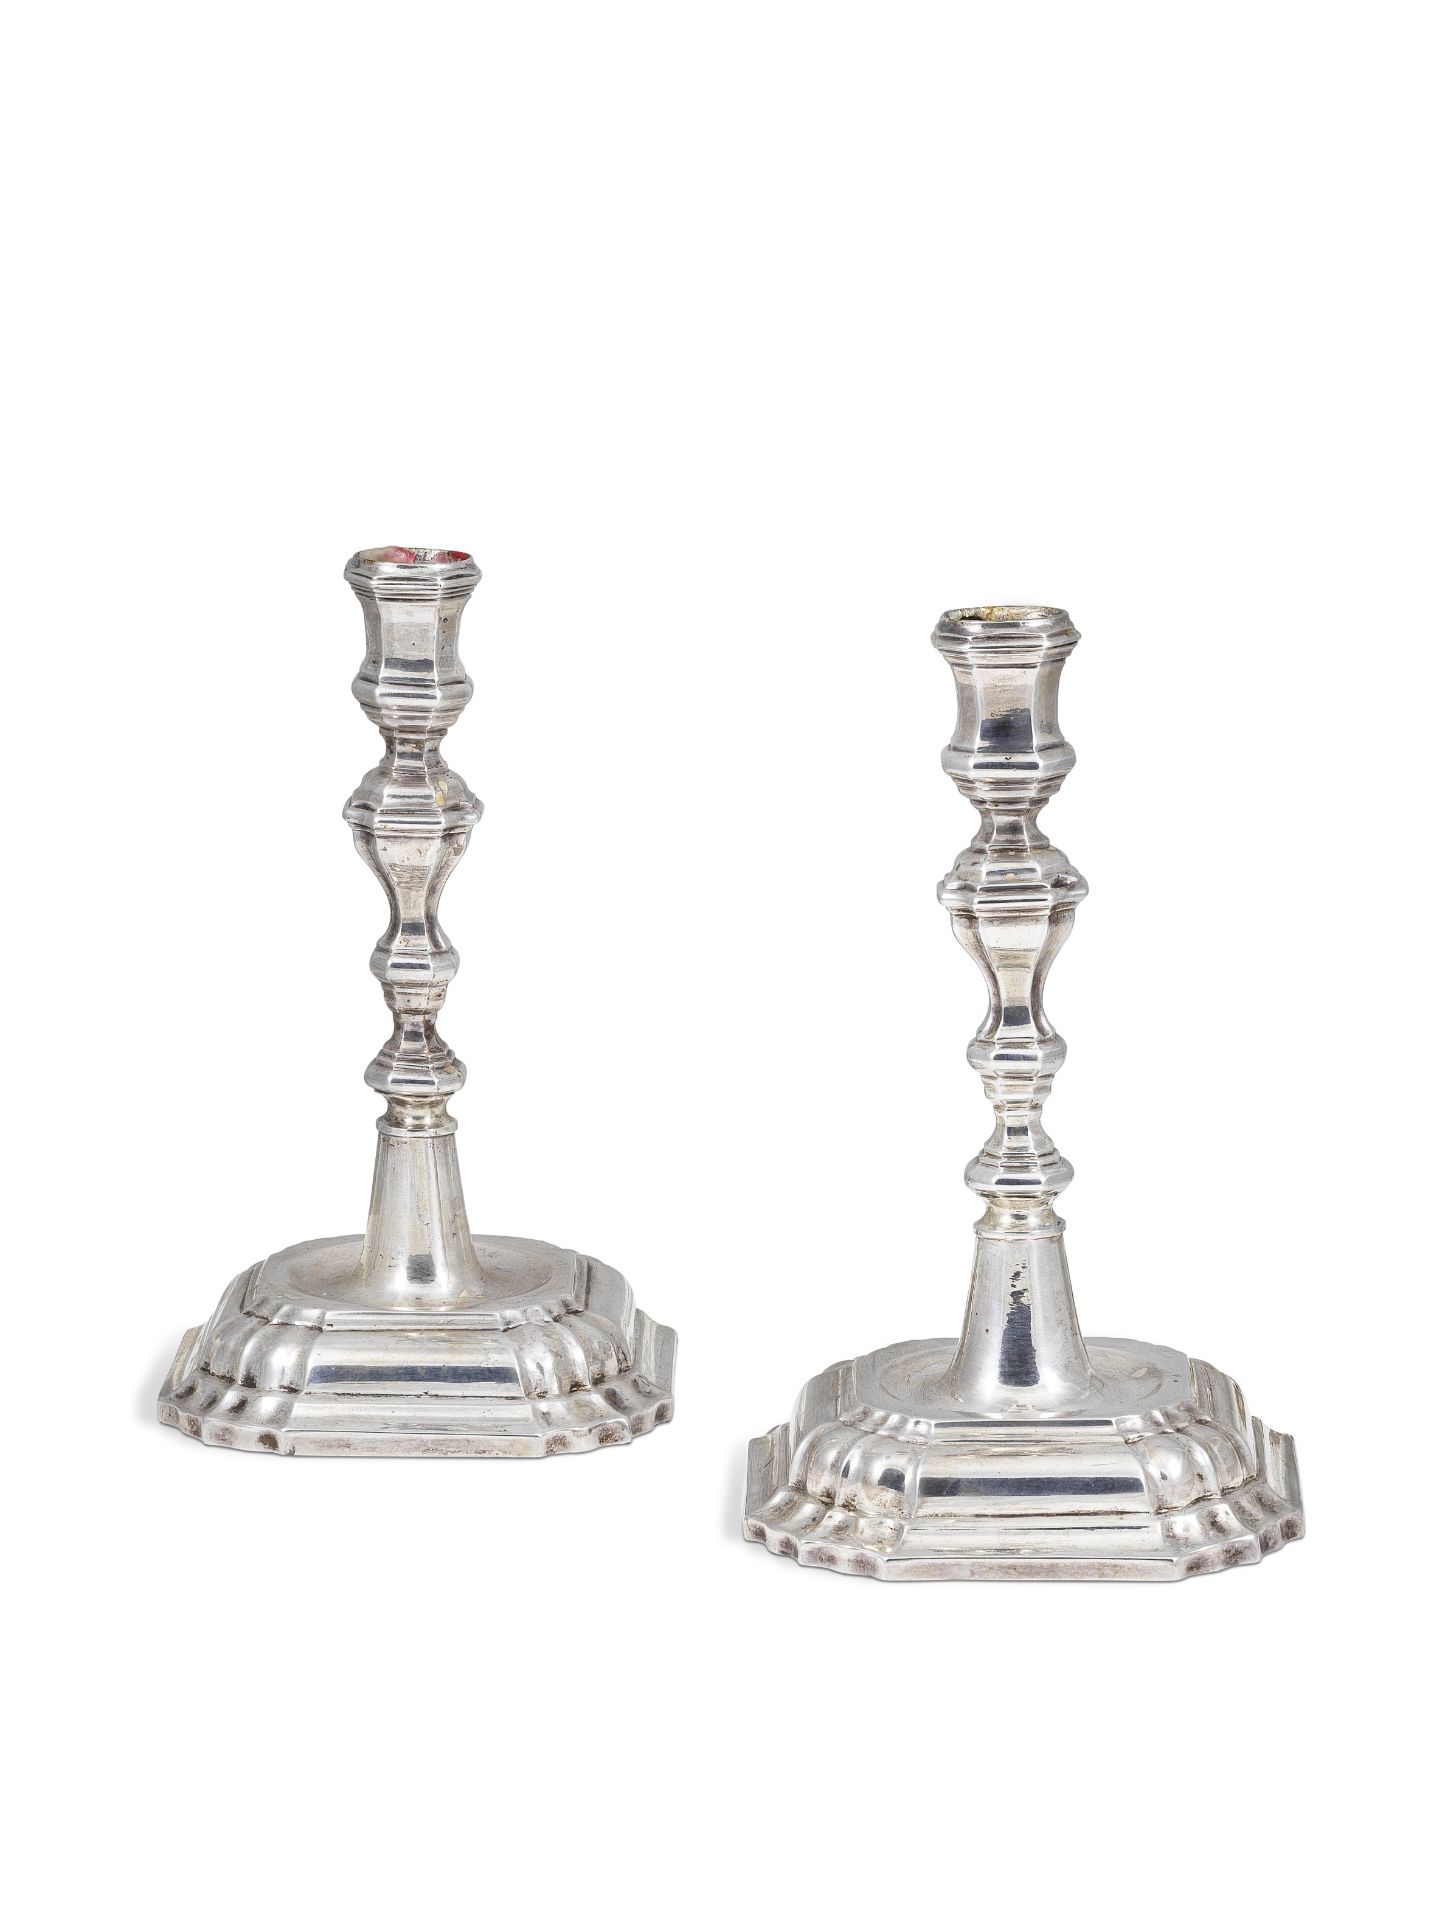 Paire de chandeliers en argent par Franziskus (Francis) M&#252;ller, Cologne, vers 1730&#8211;32...